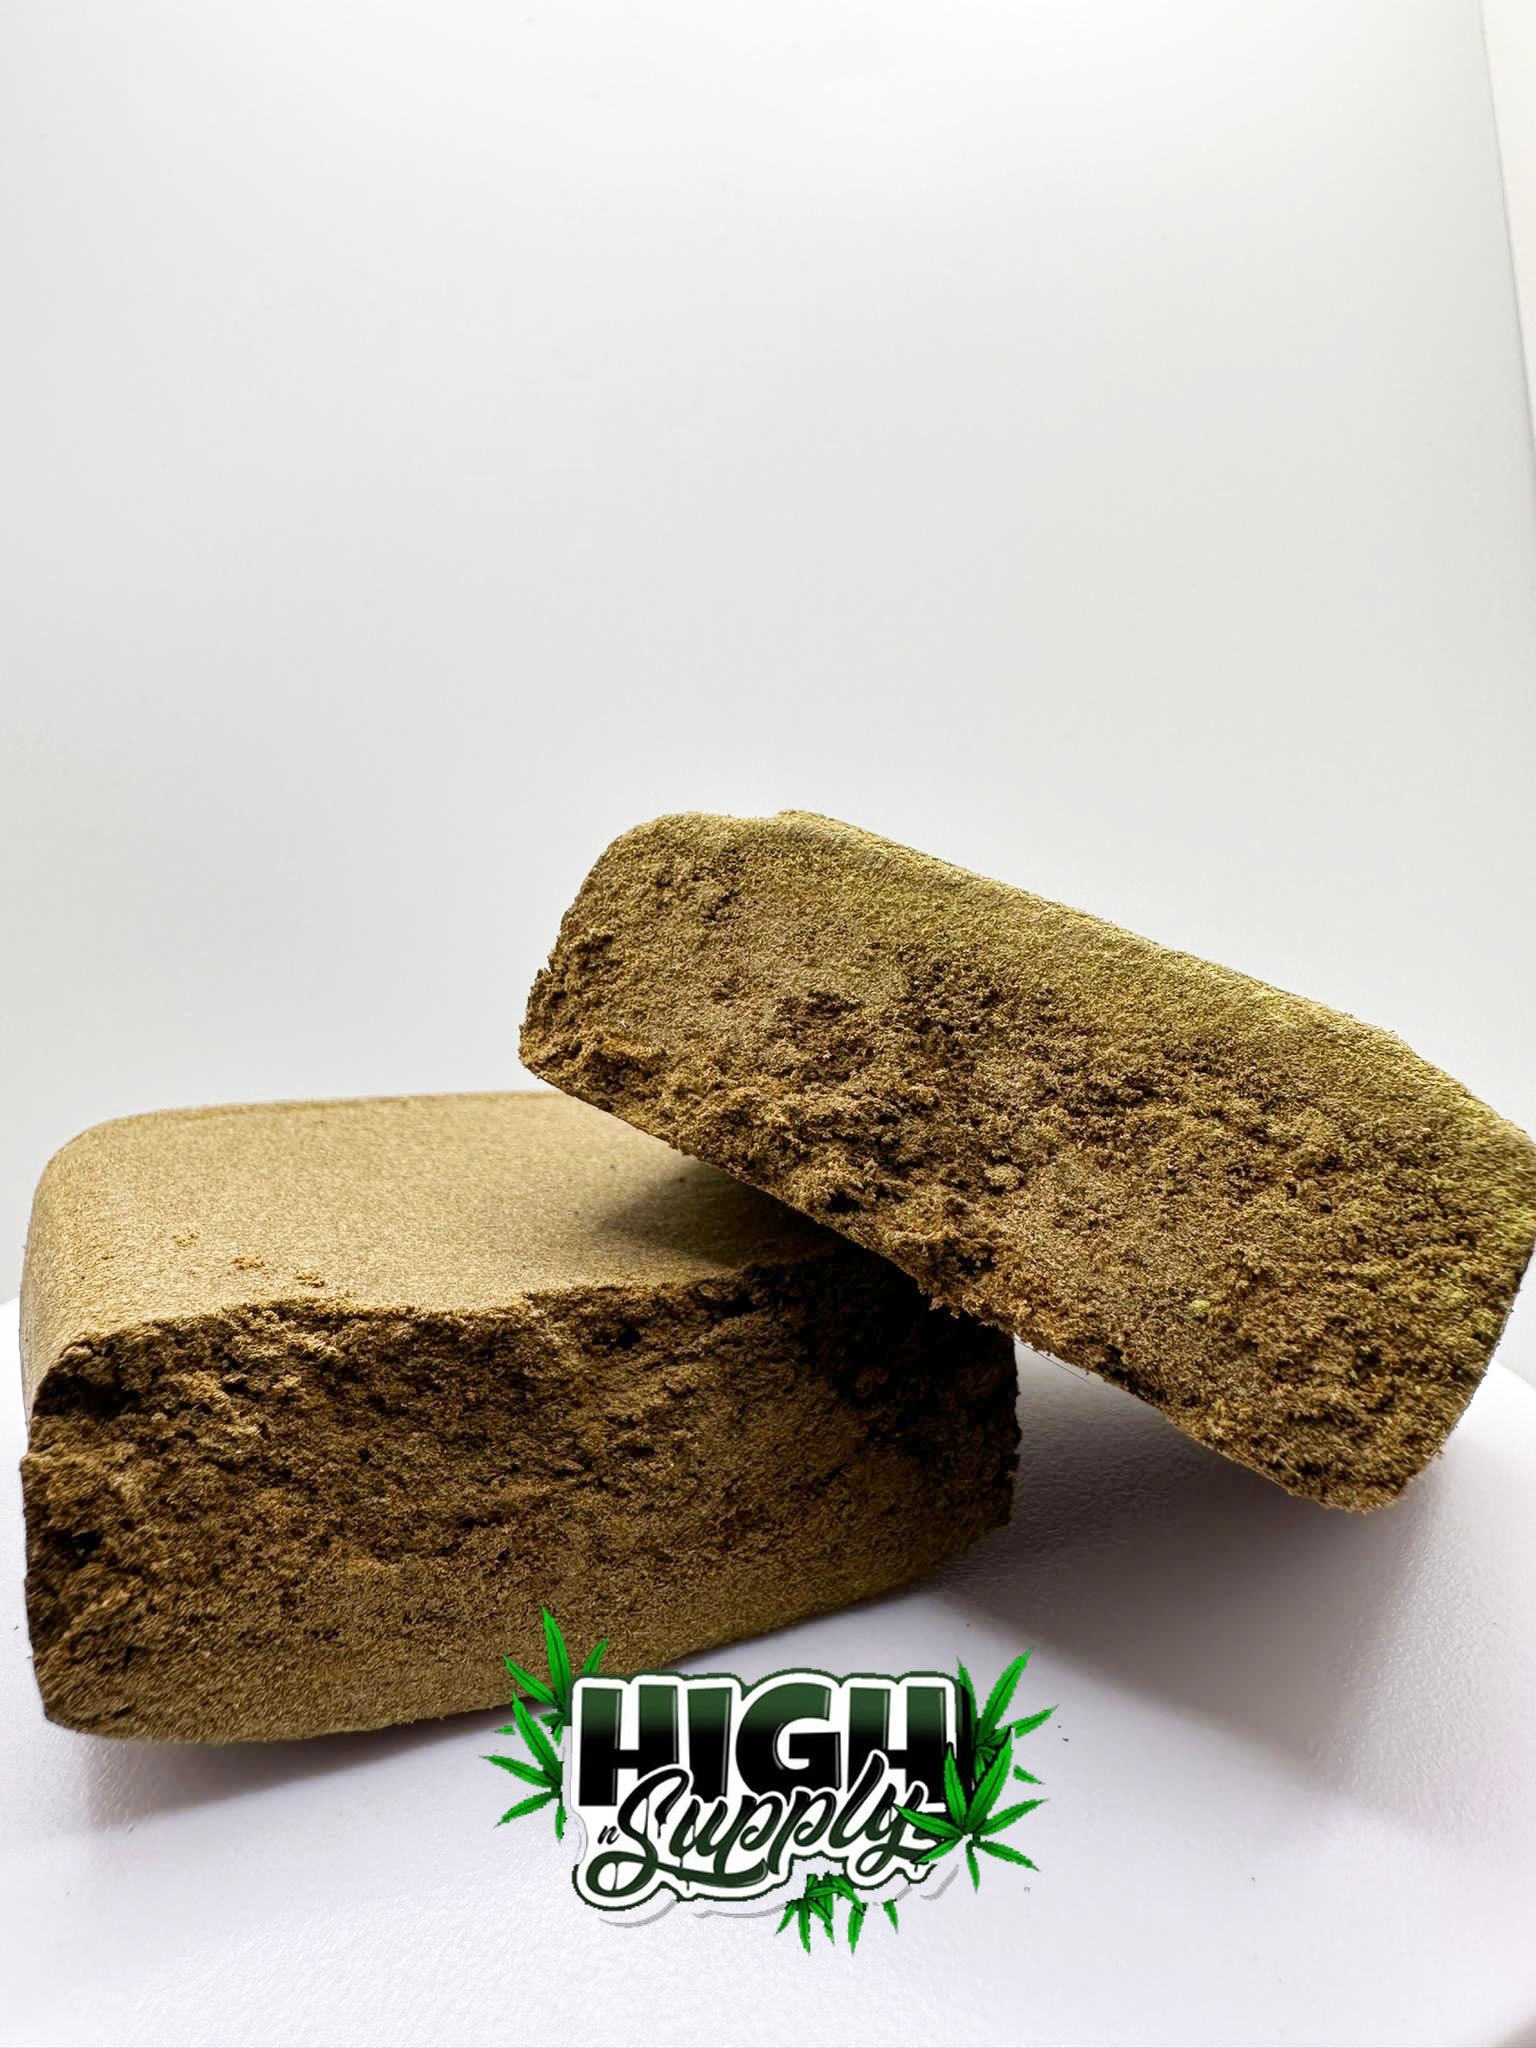 Berry Kush Blonde Hash - 38.21% CBD - HighNSupply